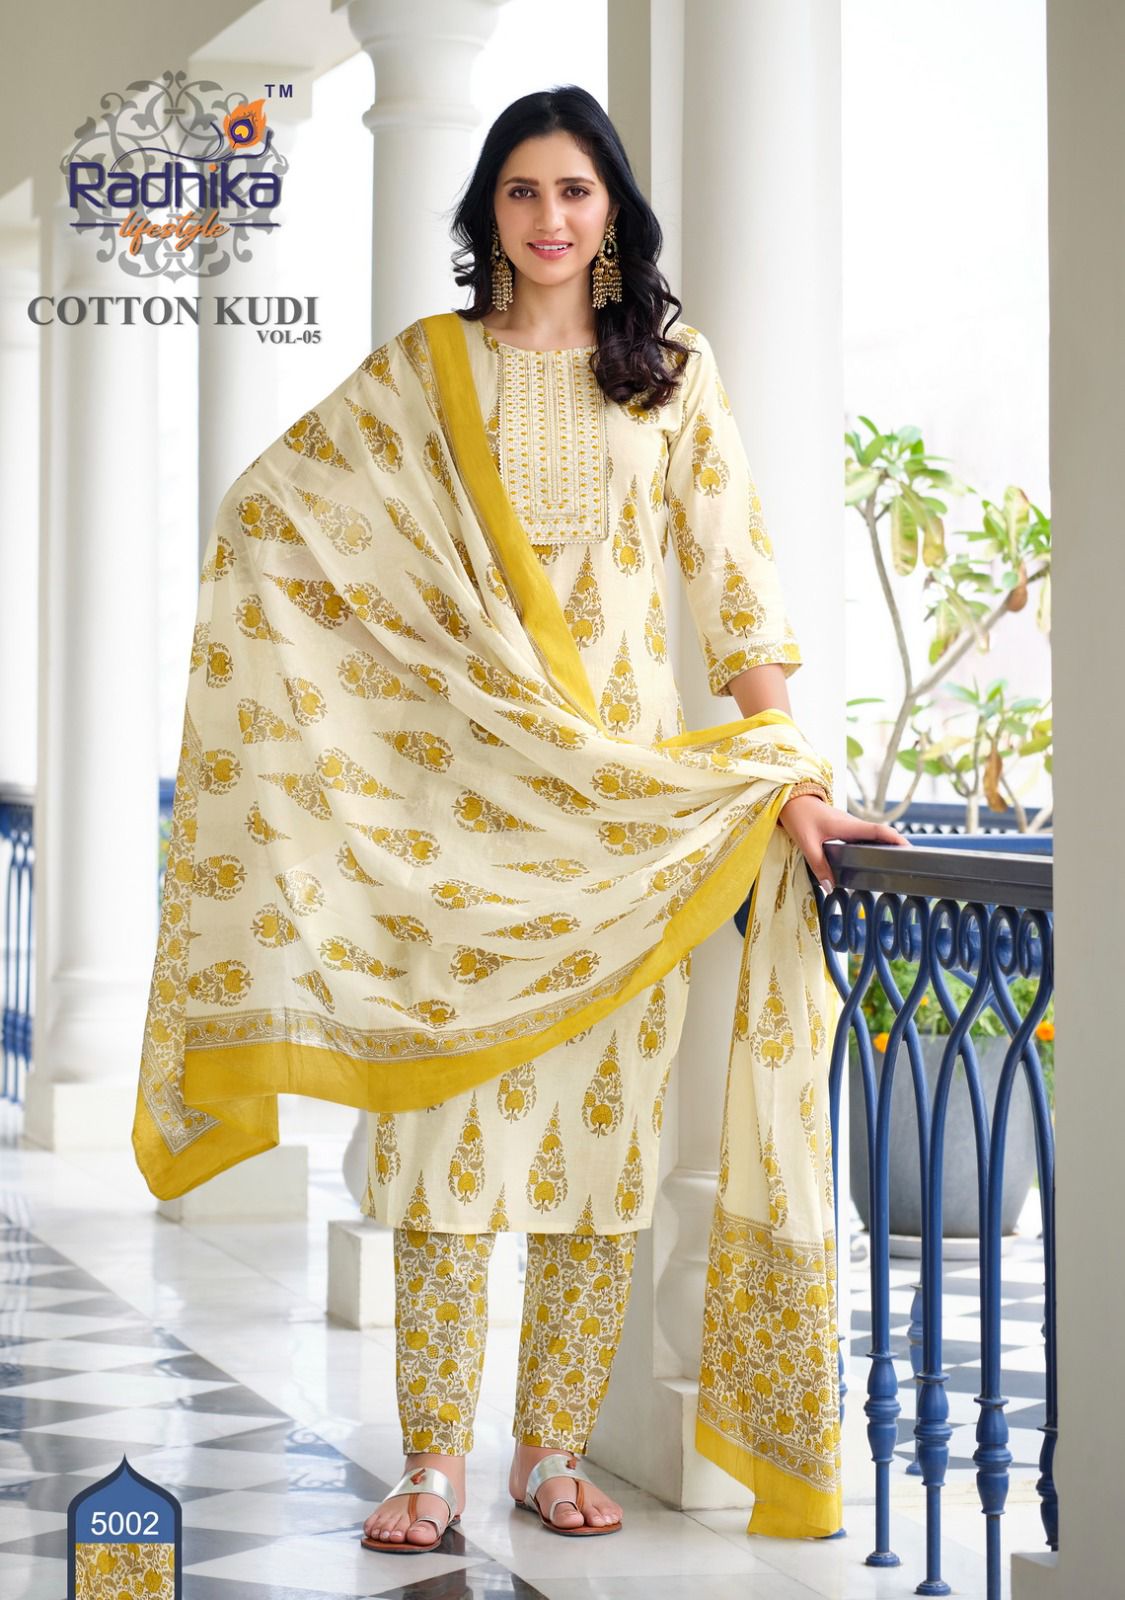 Radhika Cotton Kudi Vol 5 collection 5